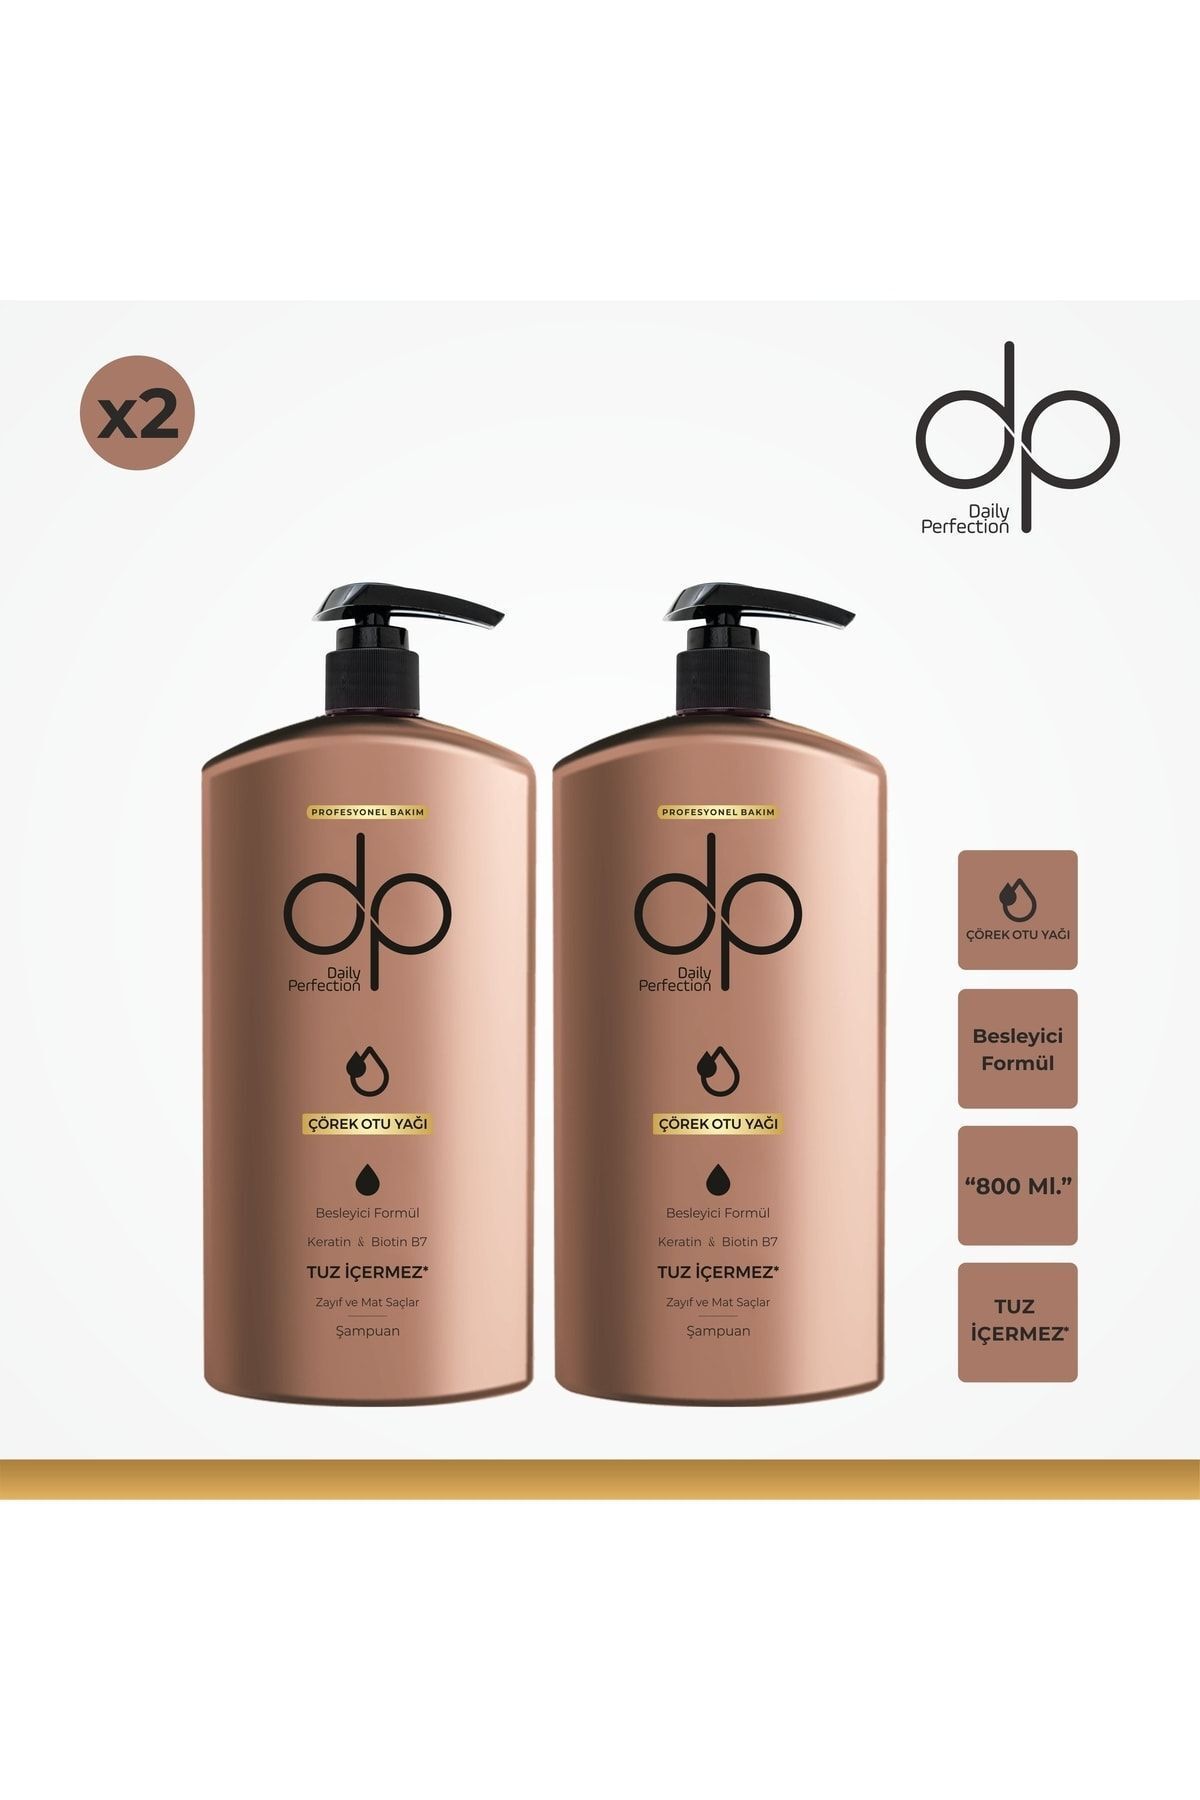 DP Daily Perfection Çörekotu Yağı Şampuan 2 Adet 800 ml